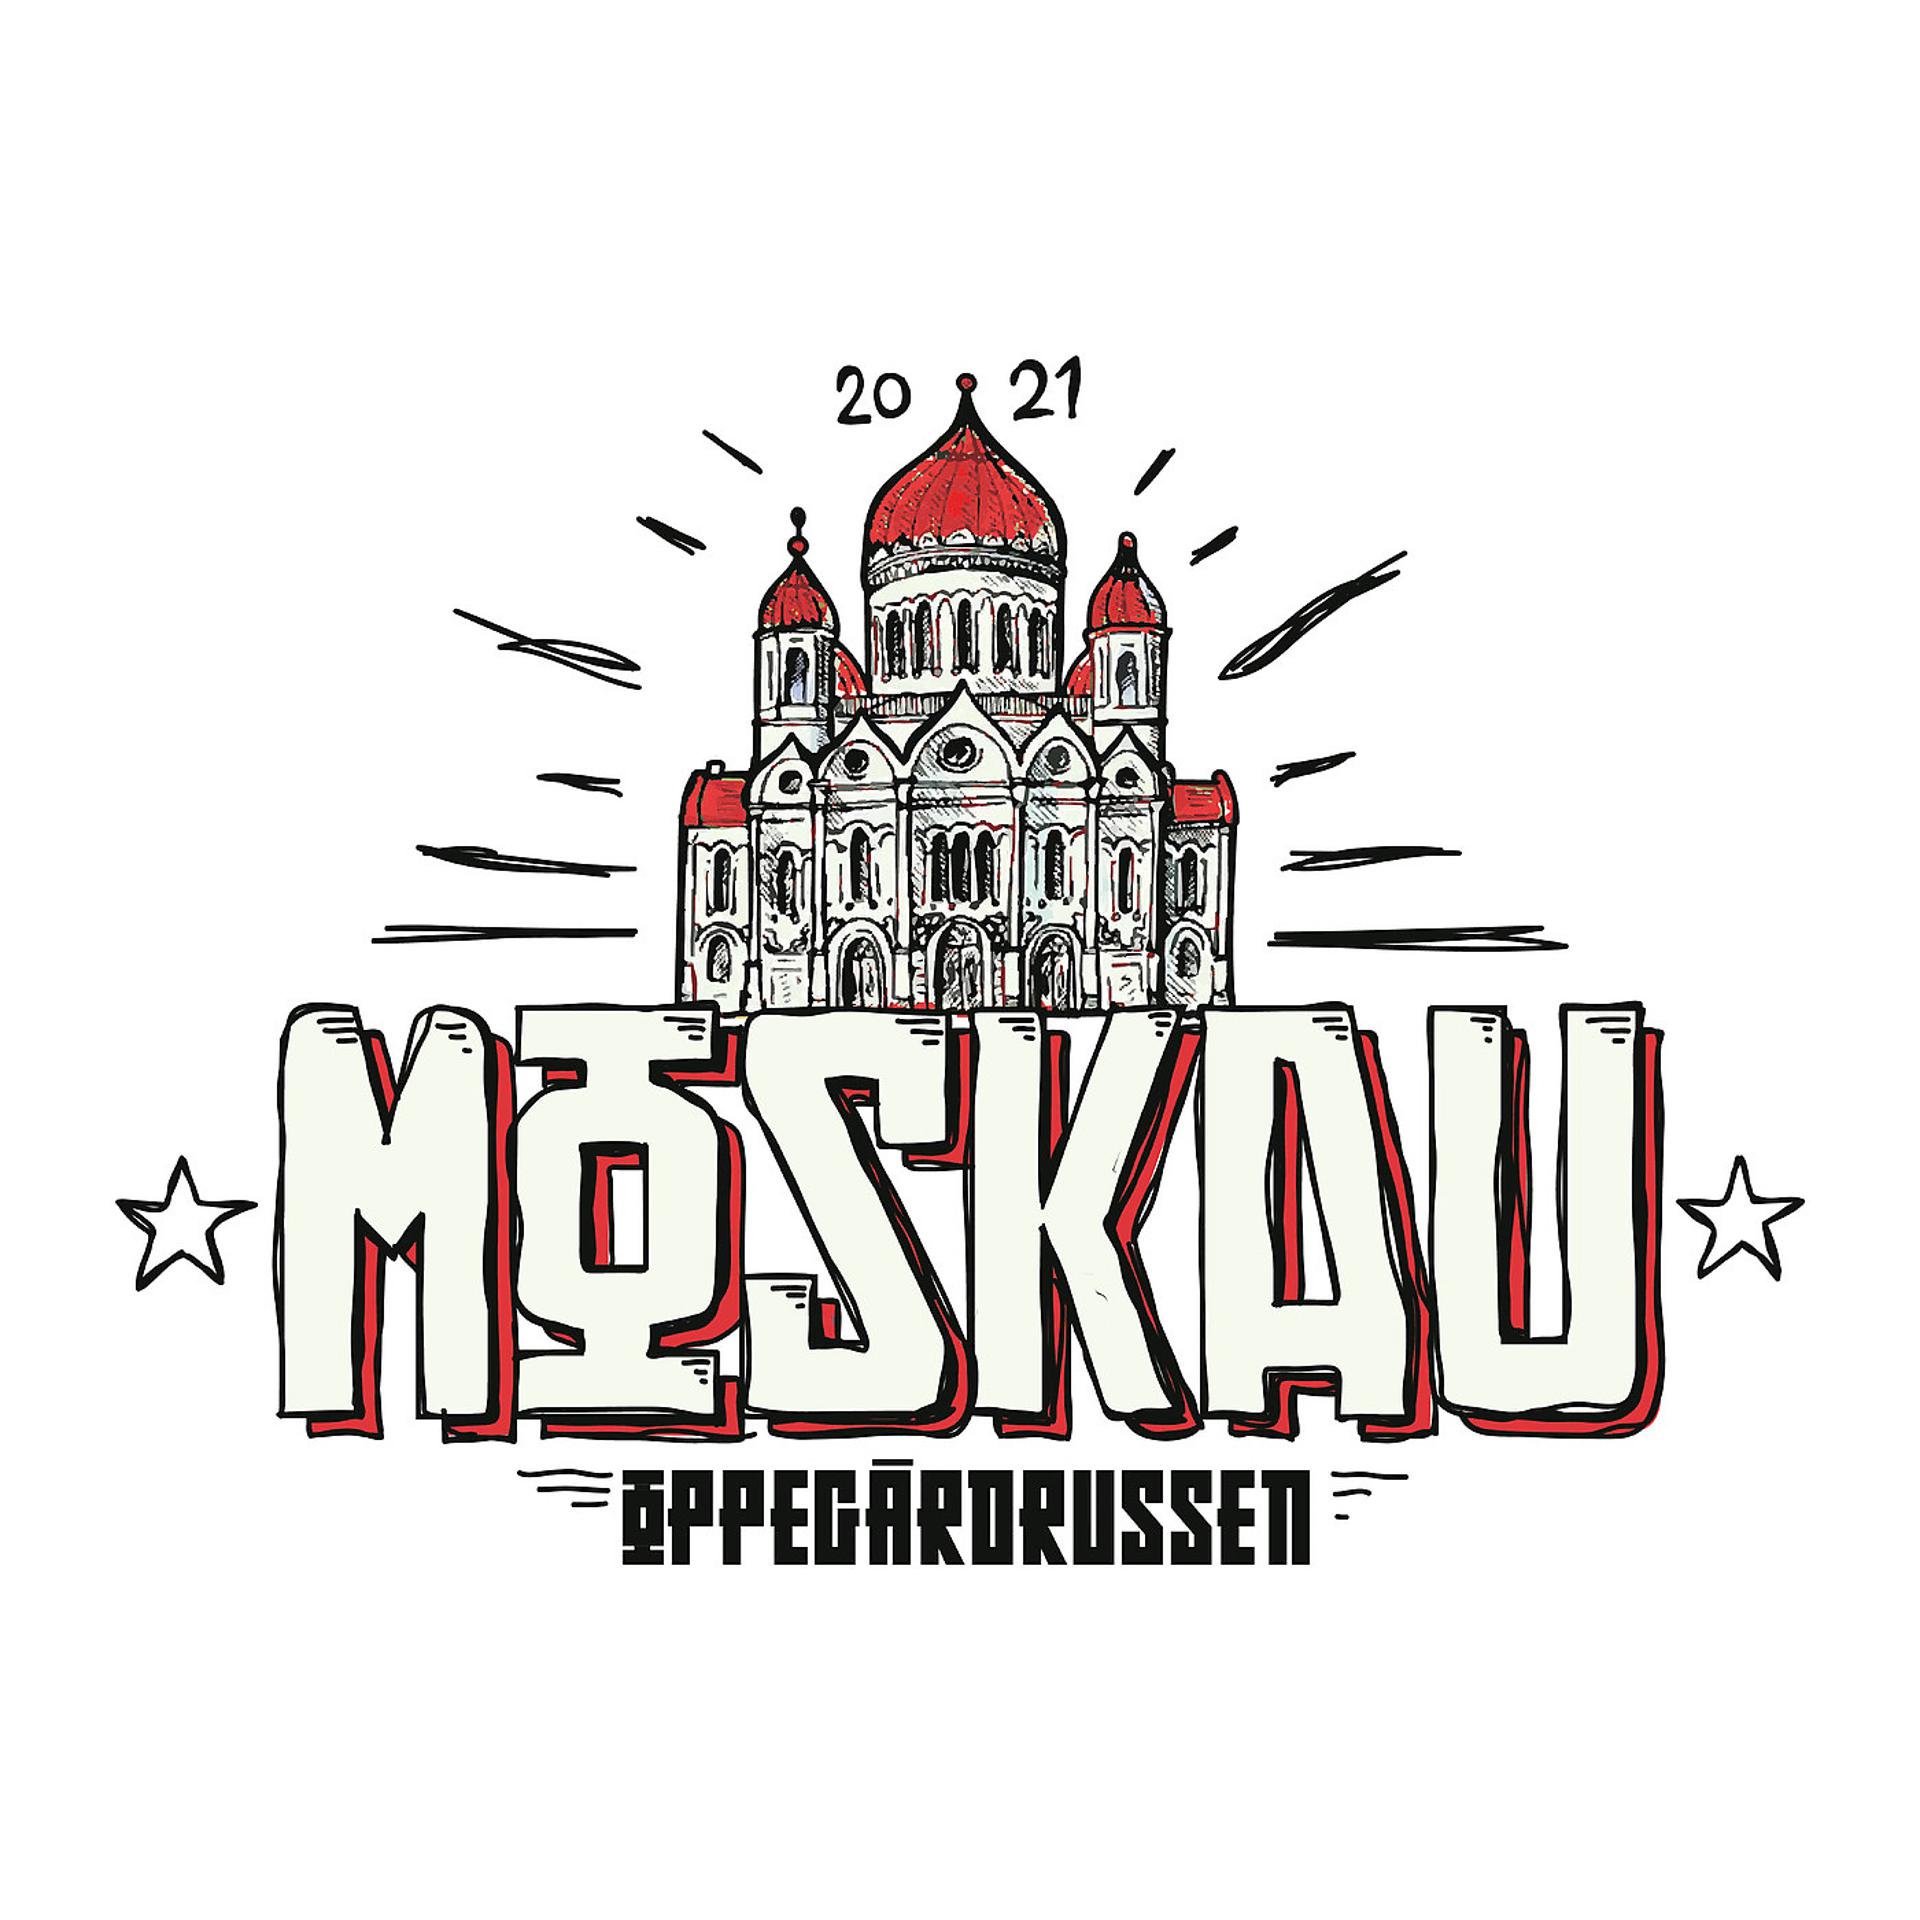 Постер альбома Moskau 2021 - Oppegårdrussen